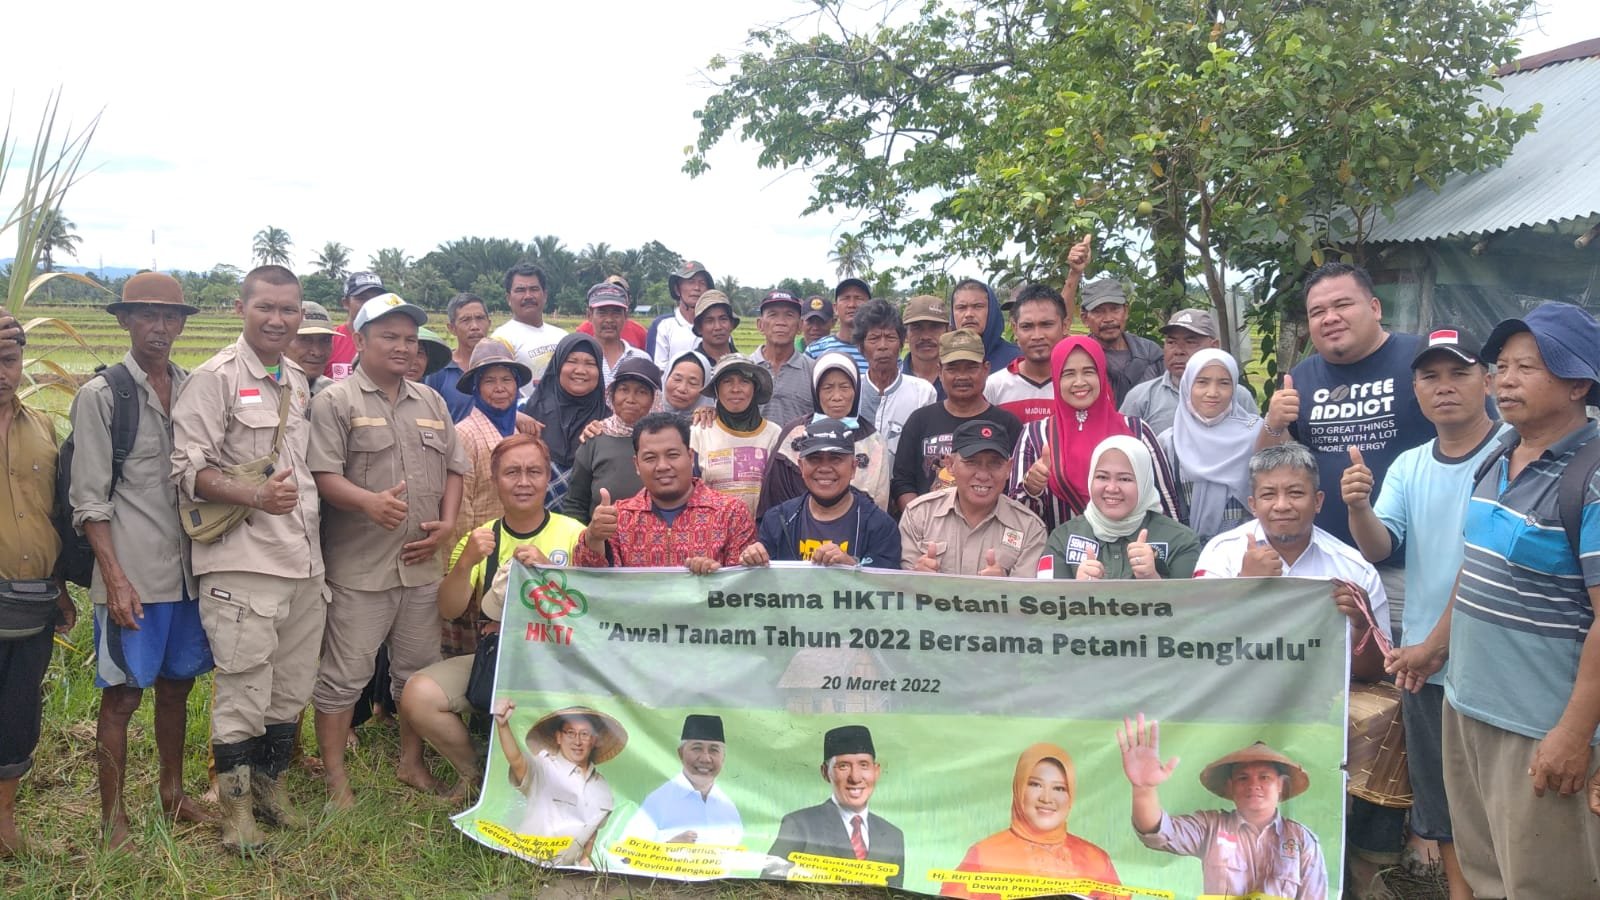 Gerak Cepat Menjaring Aspirasi Petani, DPC HKTI Kota Bengkulu akan Salurkan 3 Unit Sumur Bor